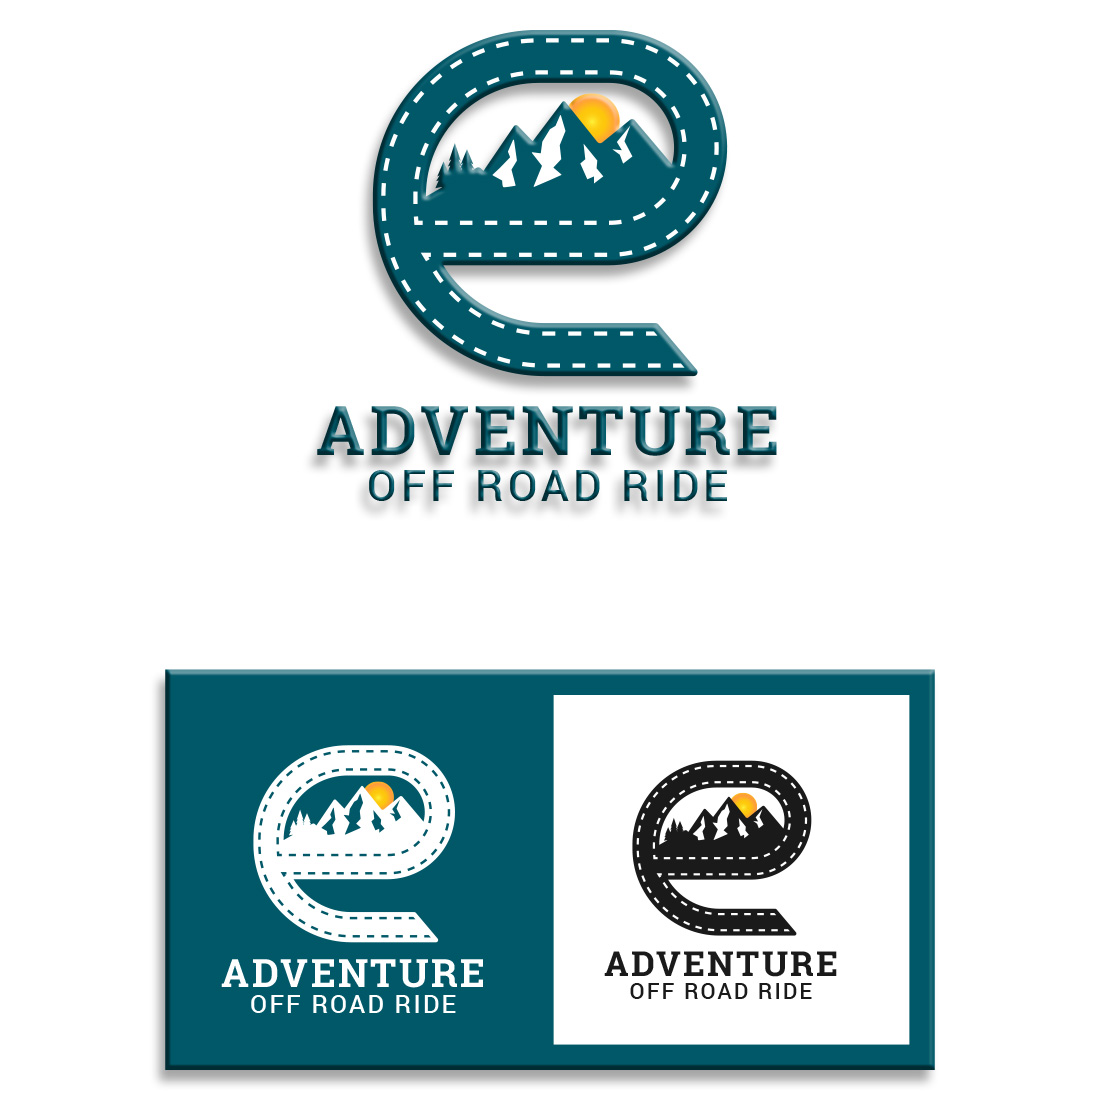 Adventure E Letter Logo Design Template cover image.